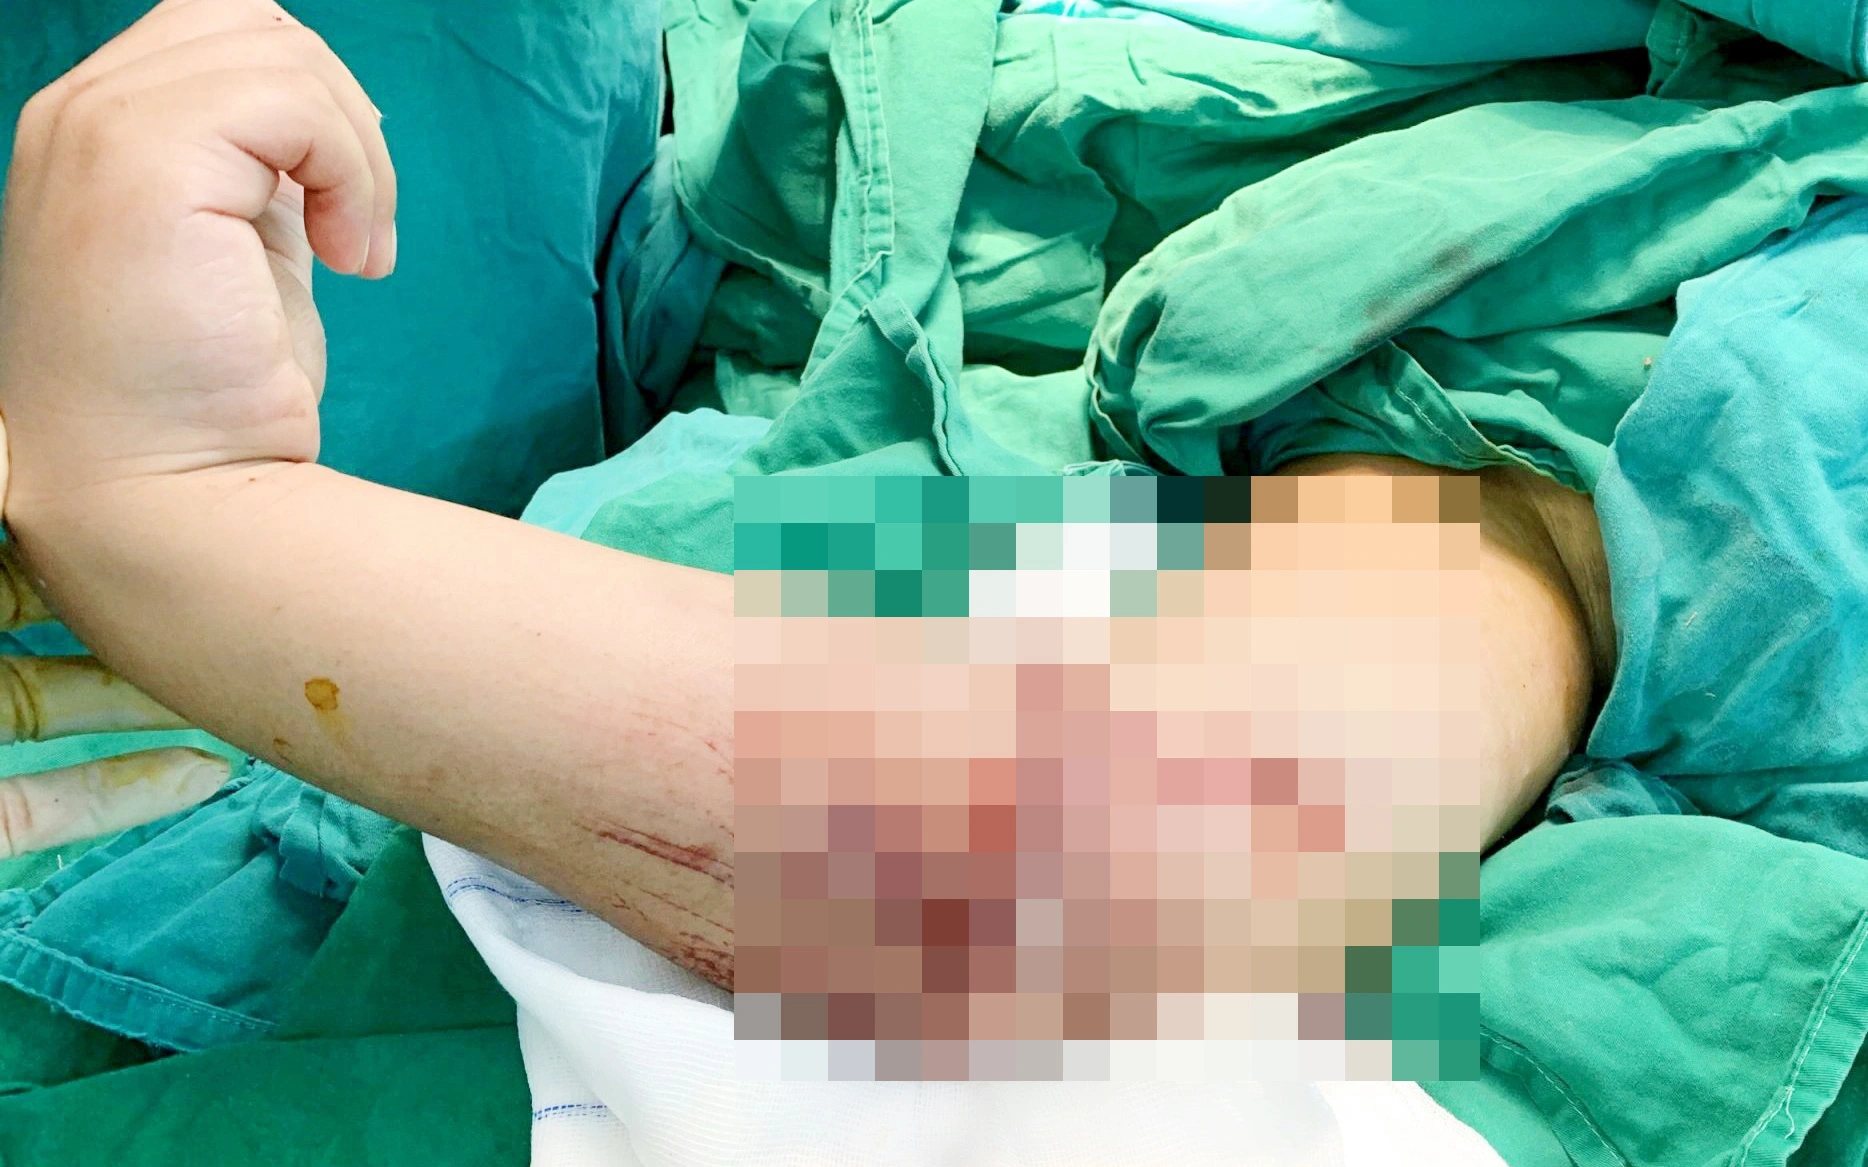 Bé trai 8 tuổi bị đứt lìa cánh tay phải, gia đình hoảng loạn bỏ vào thùng lạnh đưa con đến bệnh viện cấp cứu